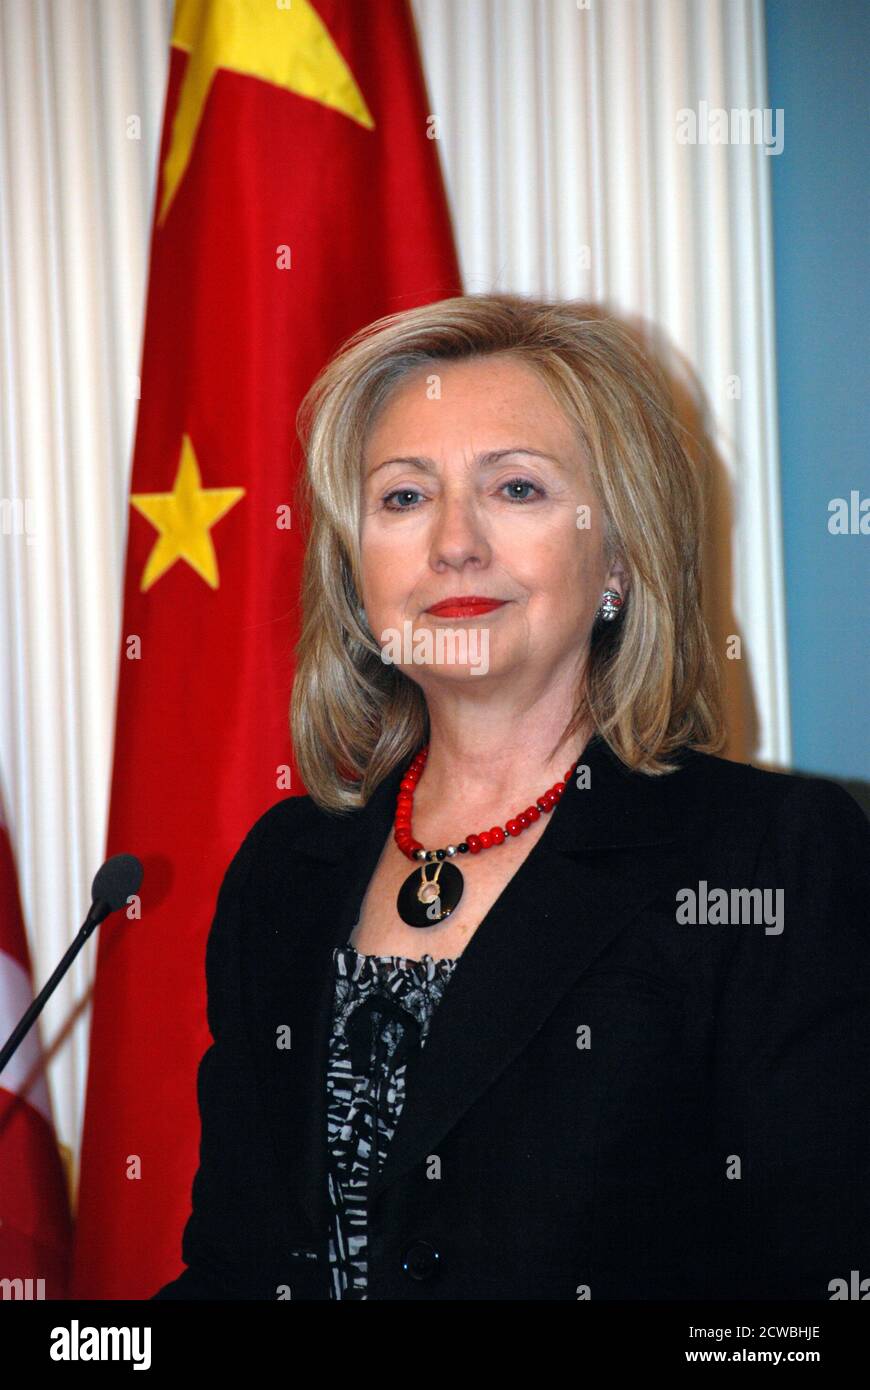 Foto von Hilary Clinton, der als Außenministerin der Vereinigten Staaten spricht. Hillary Diane Rodham Clinton (1947-) eine amerikanische Politikerin, Diplomatin, Anwältin, Schriftstellerin und öffentliche Sprecherin. Stockfoto